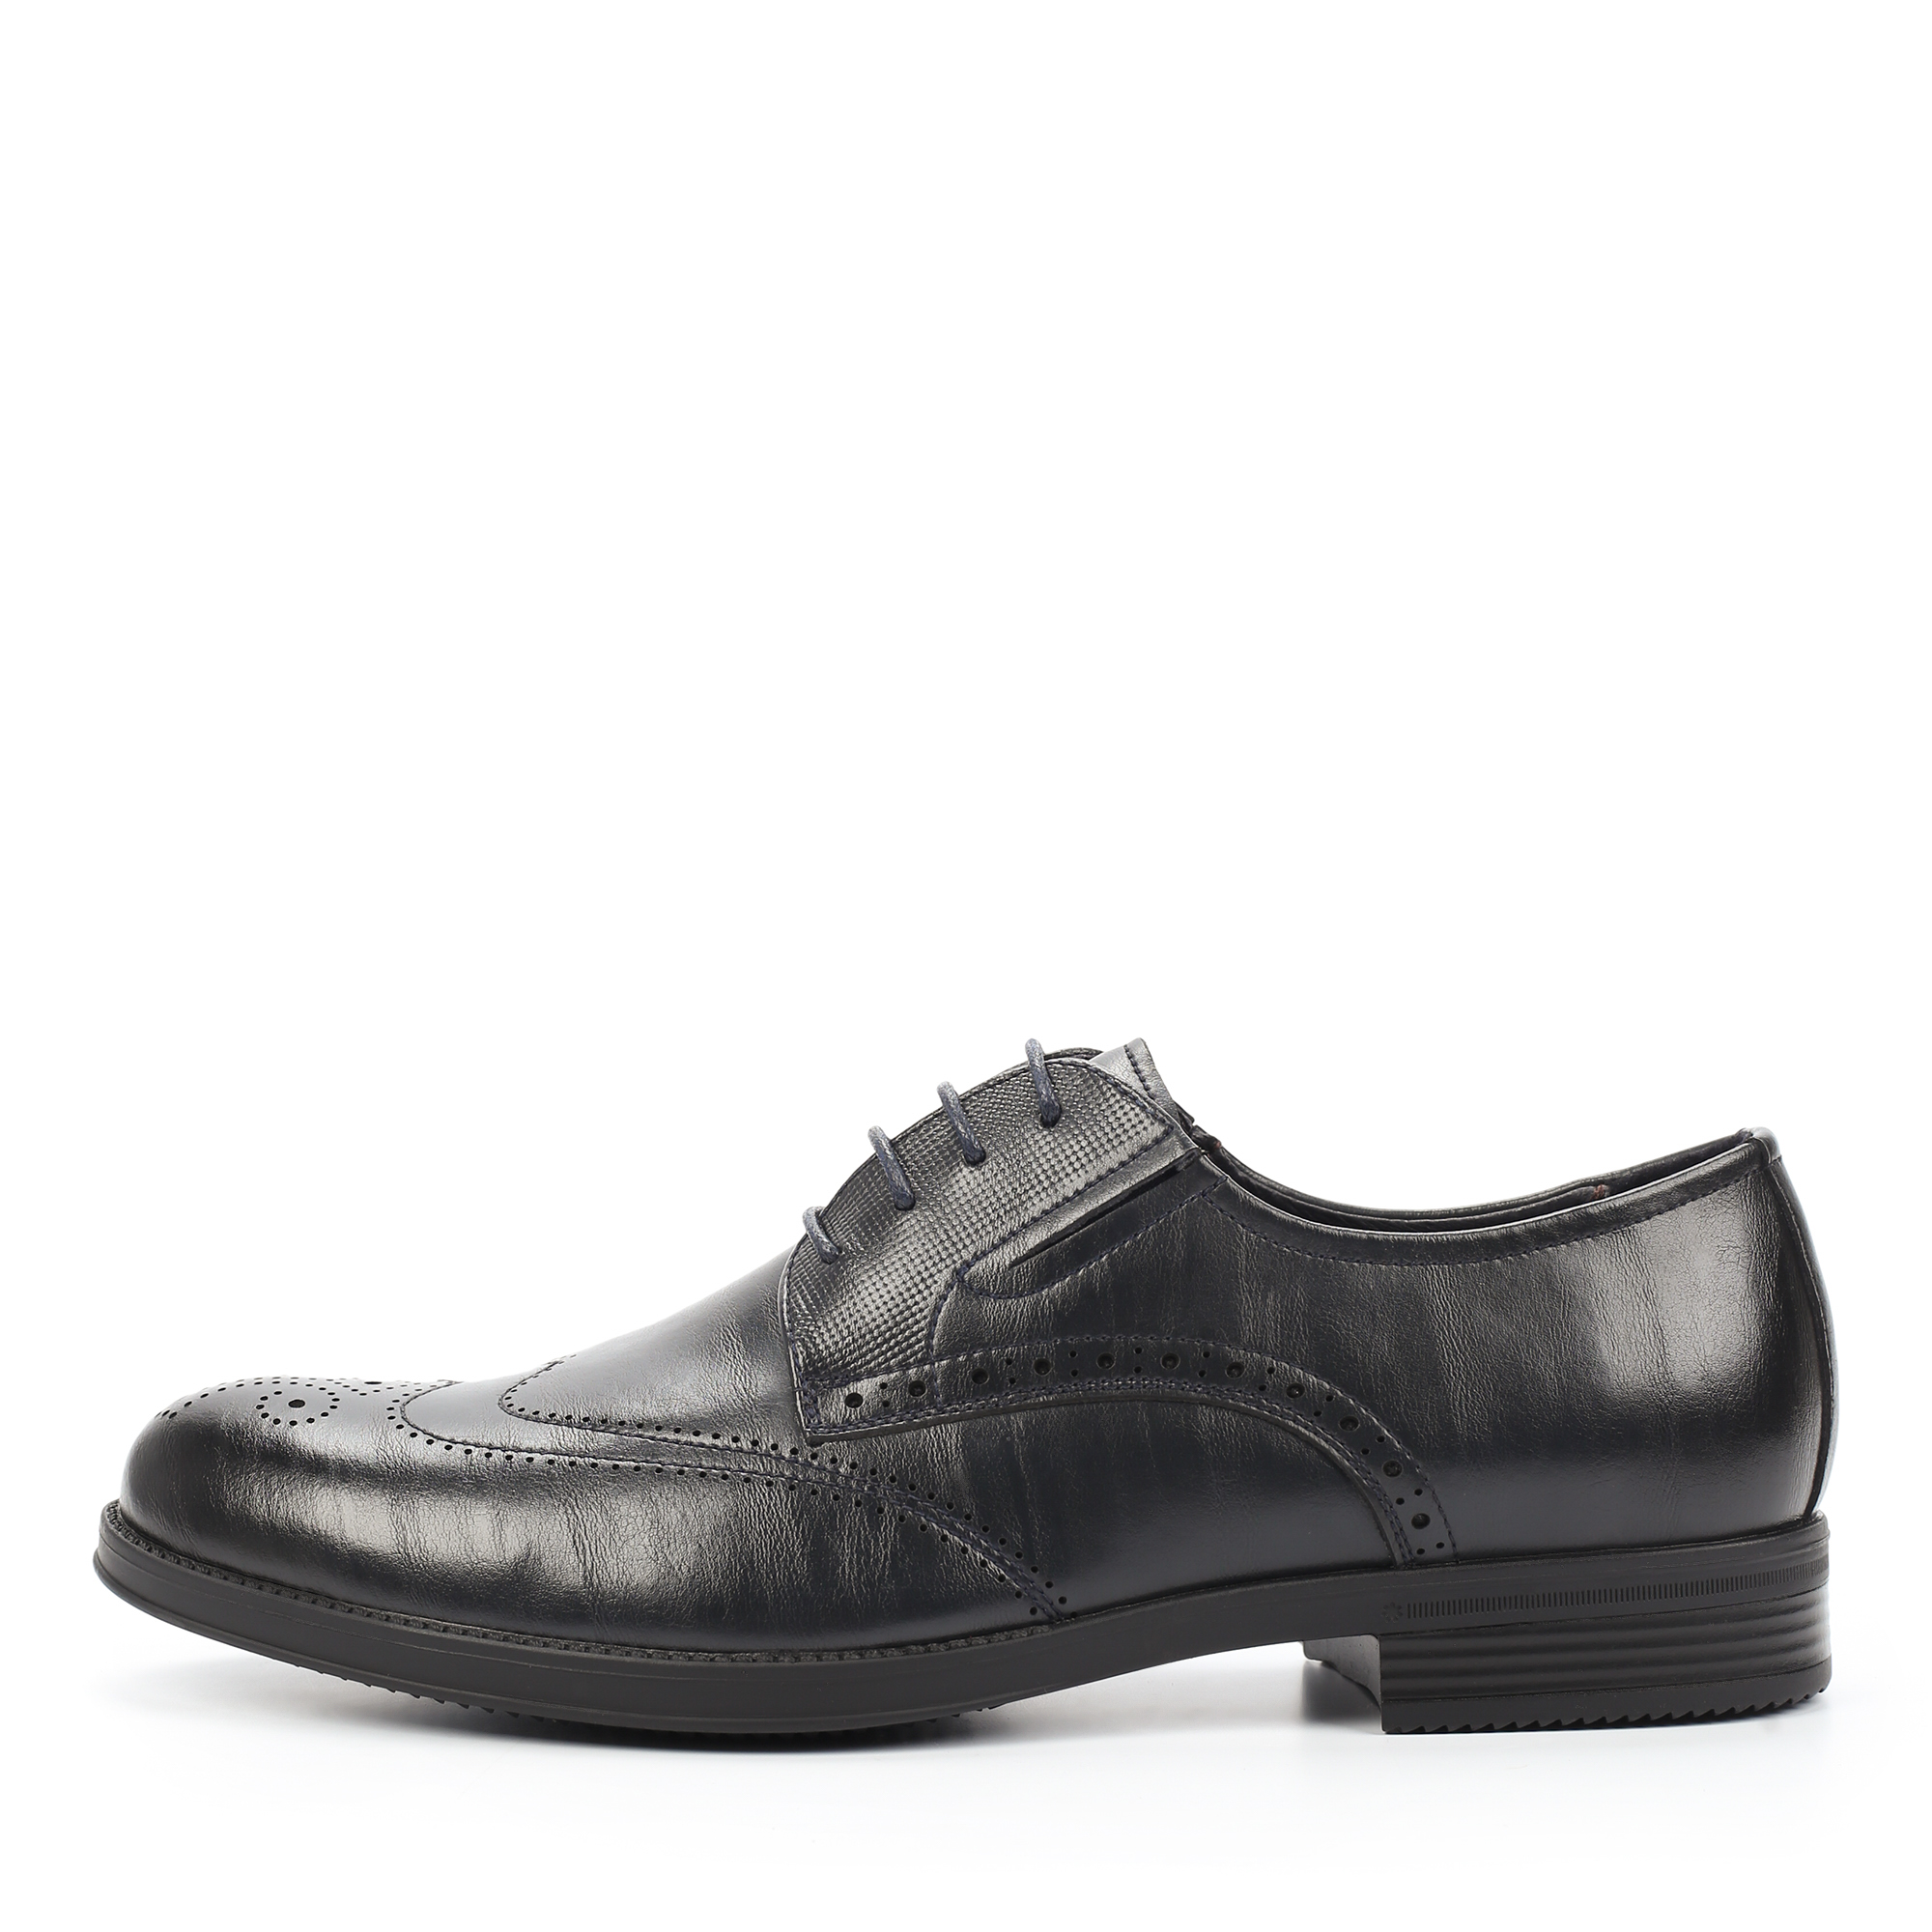 Туфли/полуботинки Thomas Munz 058-915B-1610, цвет темно-серый, размер 42